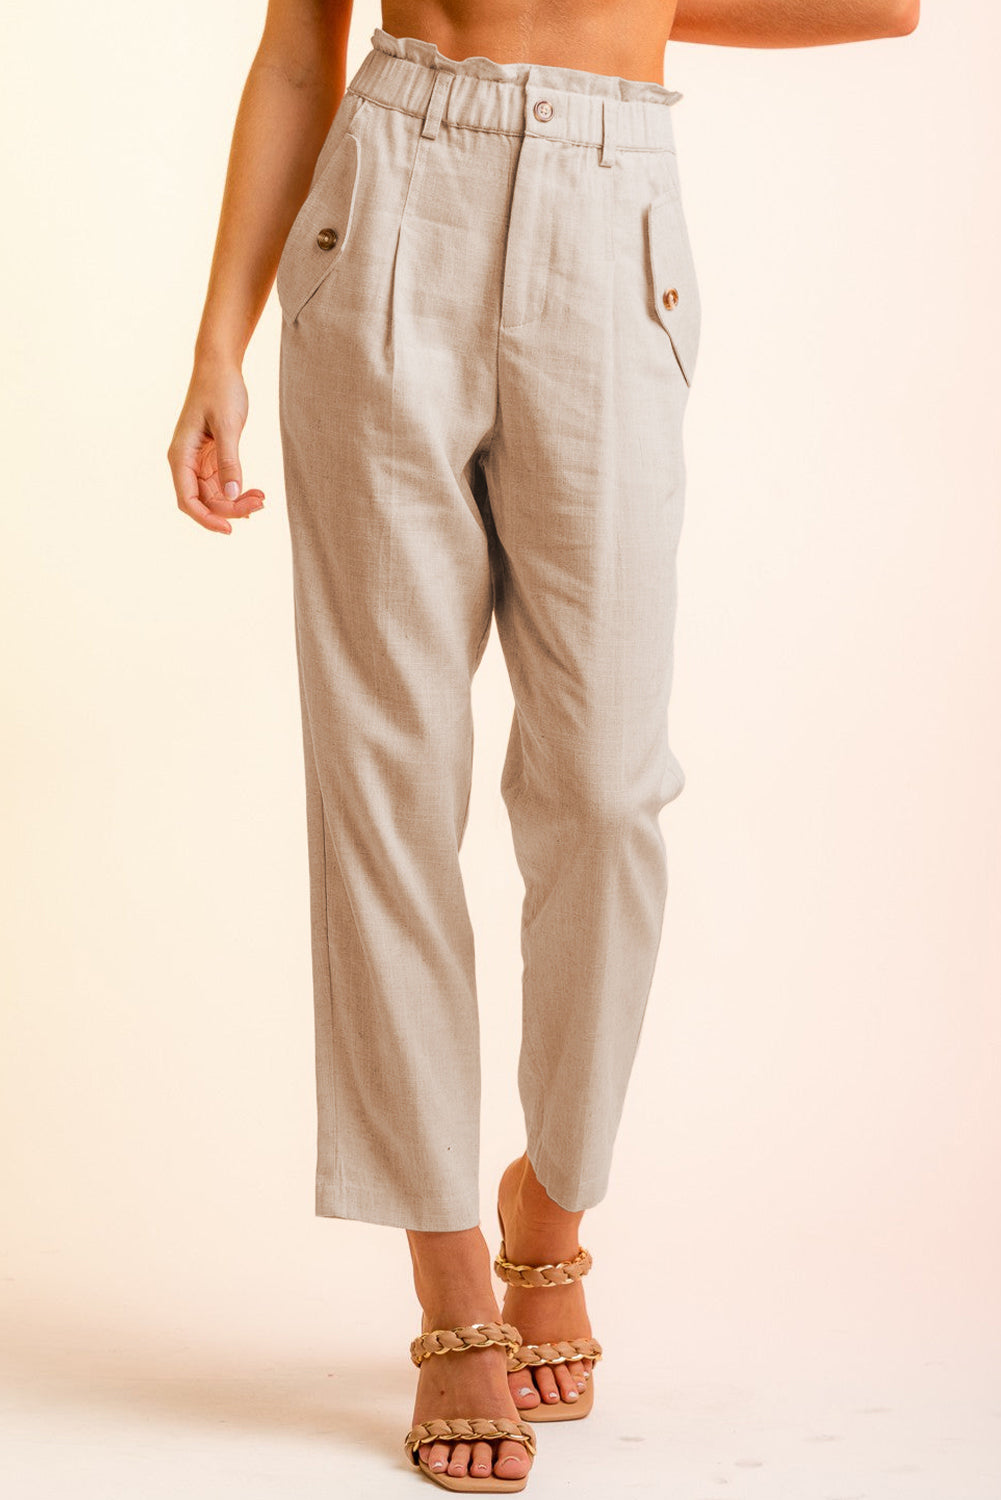 Side Button Long Pants - White / S - Bottoms - Pants - 16 - 2024